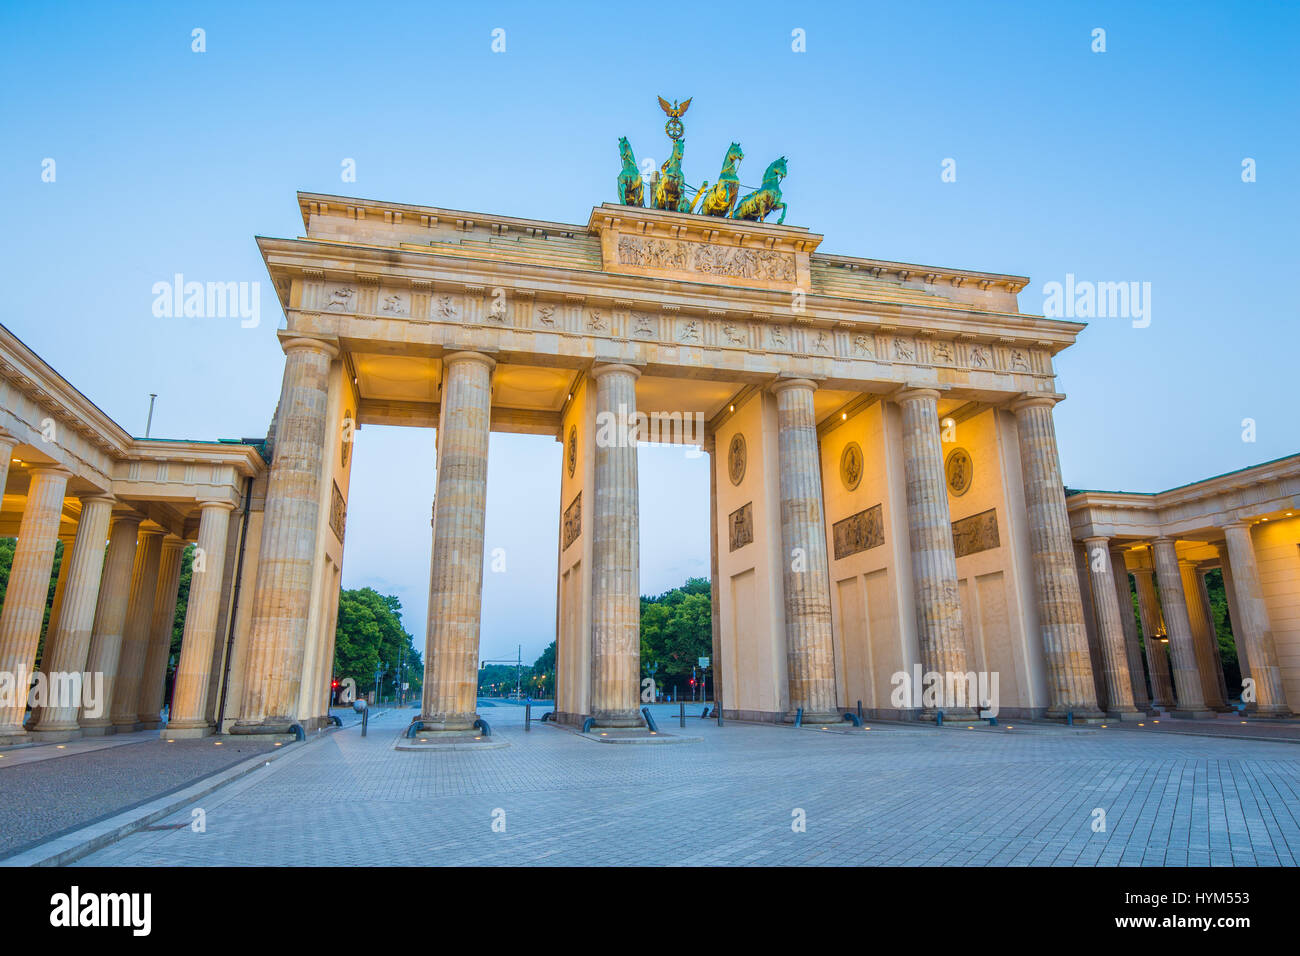 Klassische Ansicht des berühmten Brandenburger Tor (Brandenburger Tor), eines der bekanntesten Wahrzeichen und nationale Symbole Deutschlands, in der Dämmerung in blau Stockfoto